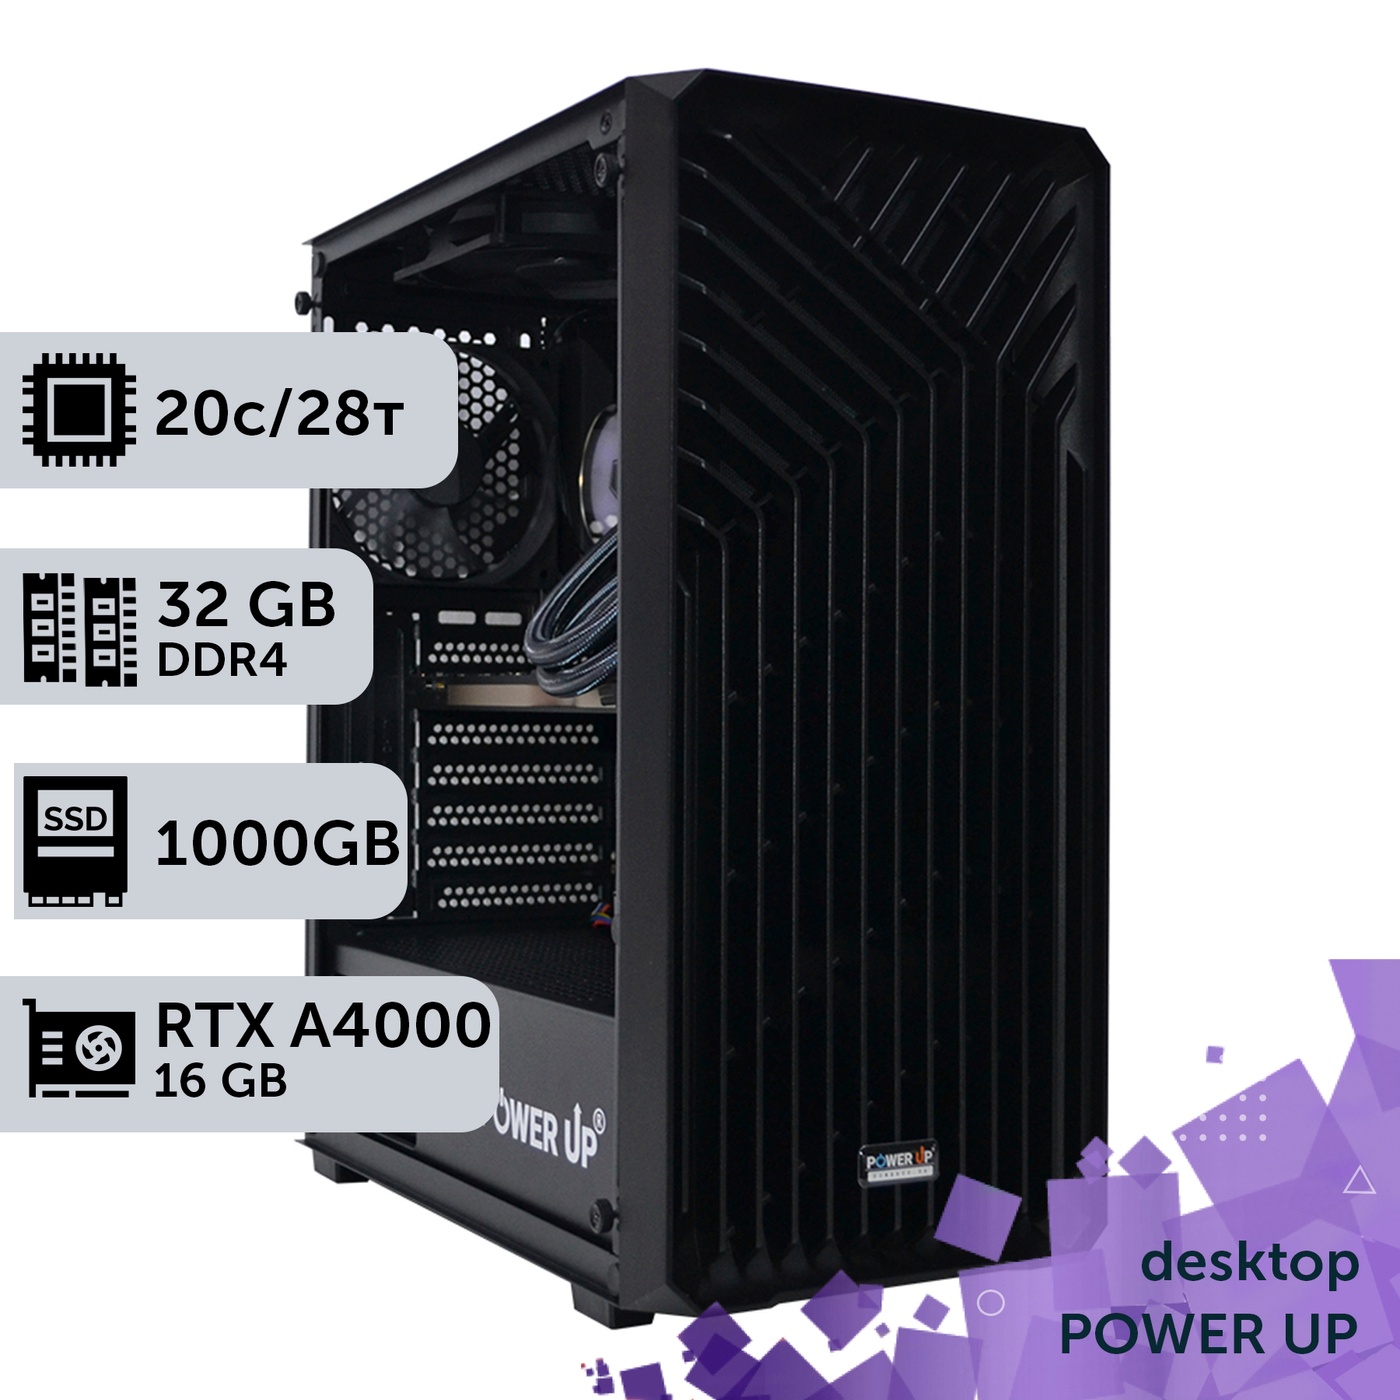 Рабочая станция PowerUp Desktop #318 Core i7 14700K/32 GB/SSD 1TB/NVIDIA Quadro RTX A4000 16GB